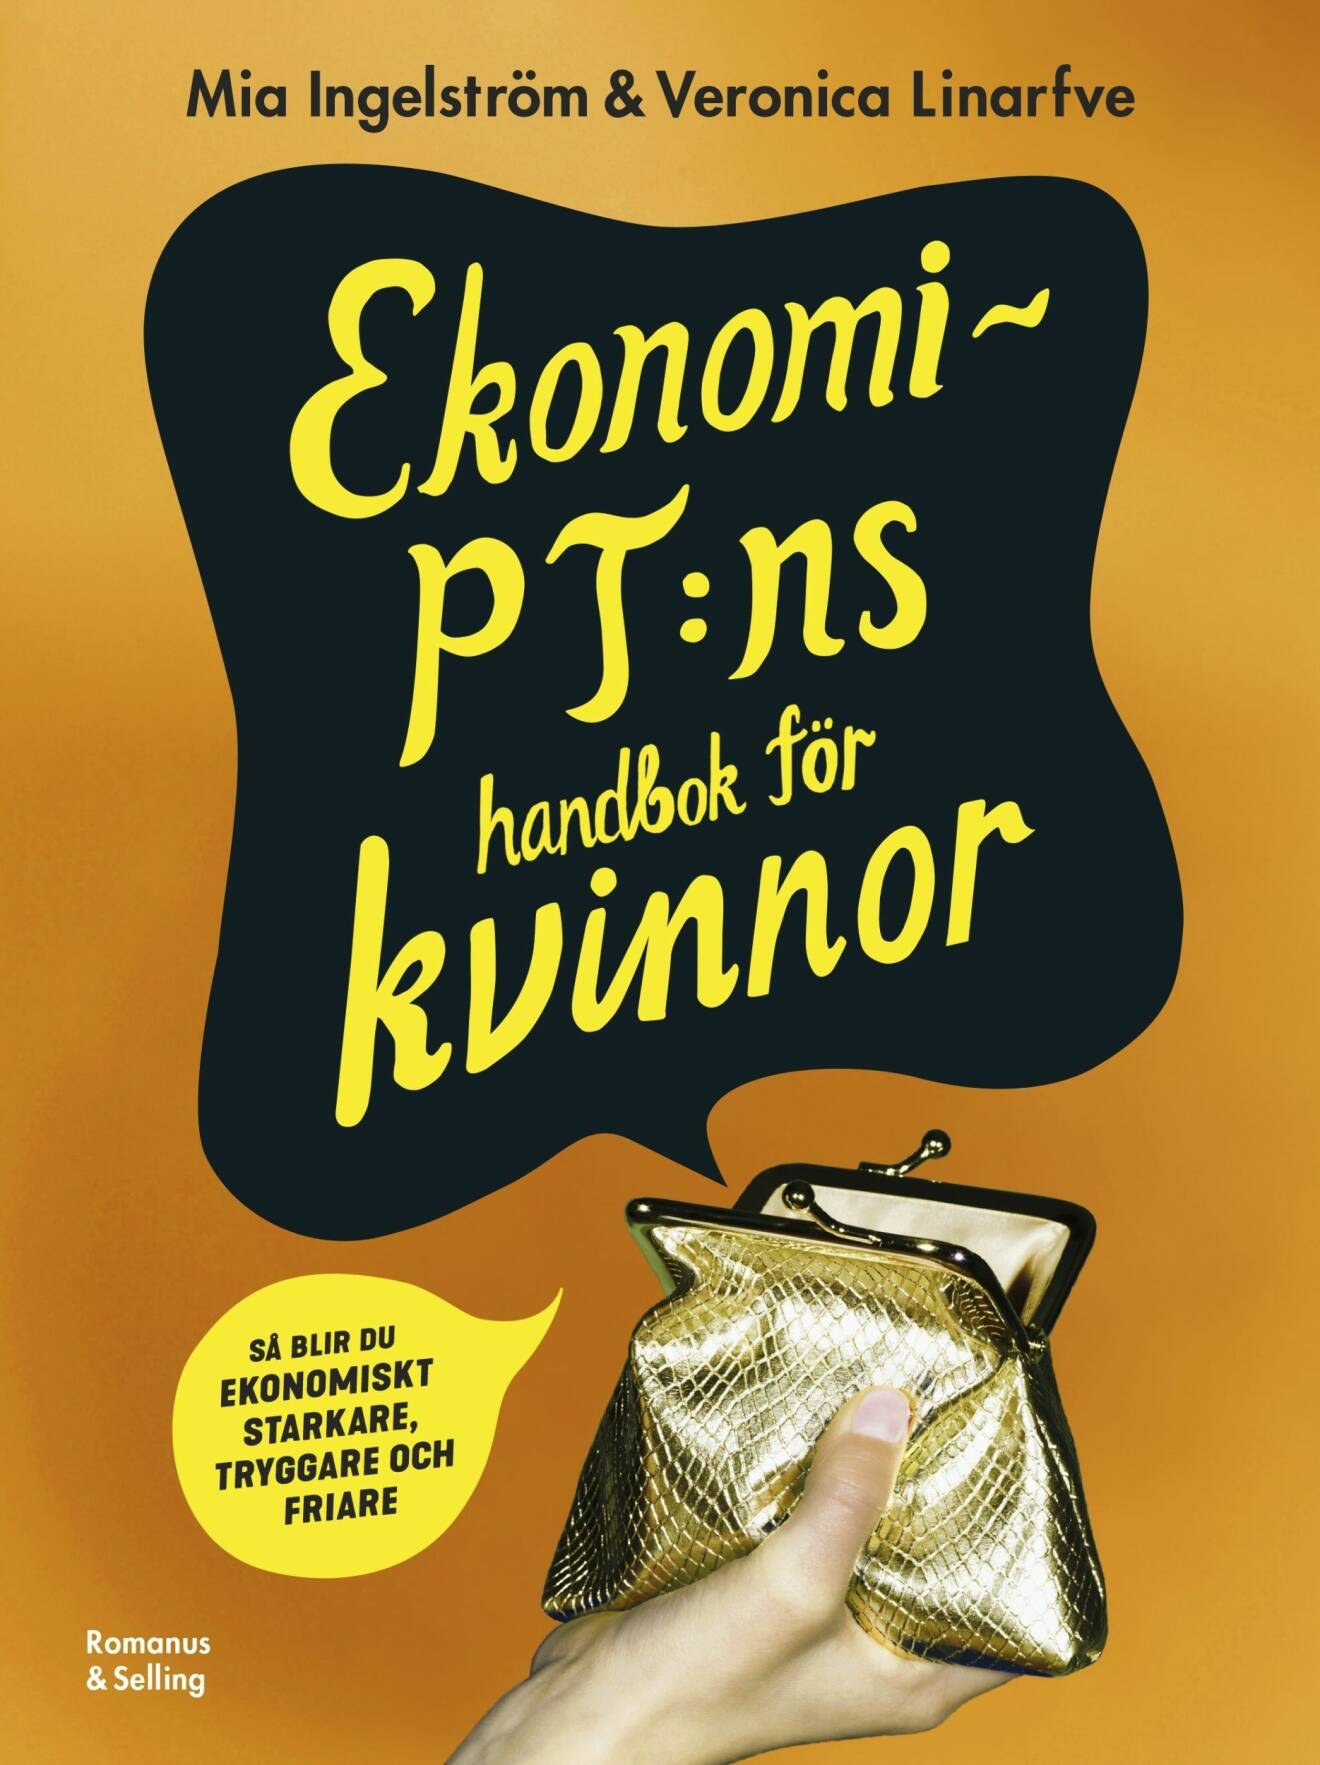 Mia Ingeströms och Veronica Linarfves bok Ekonomi-PT:ns handbok för kvinnor.